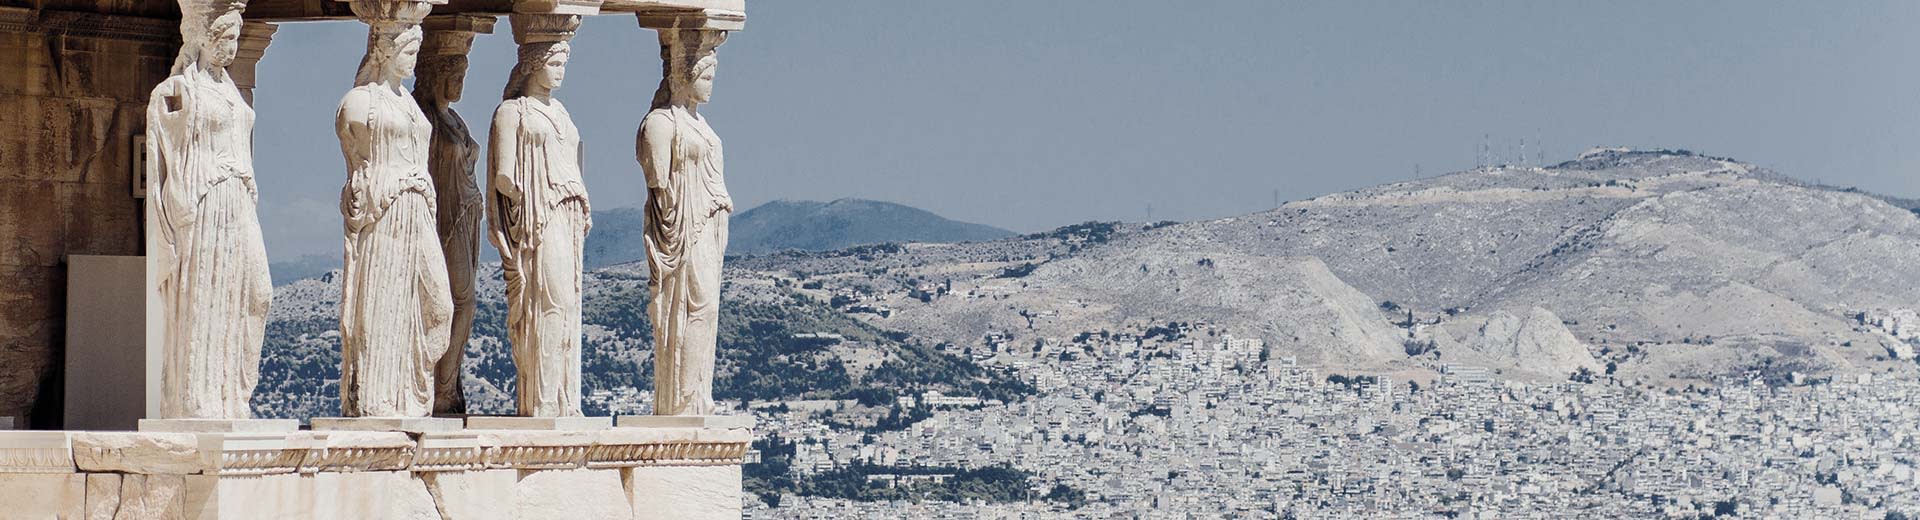 Cariátidos de la Erechleión en Atenas con montañas en el fondo.